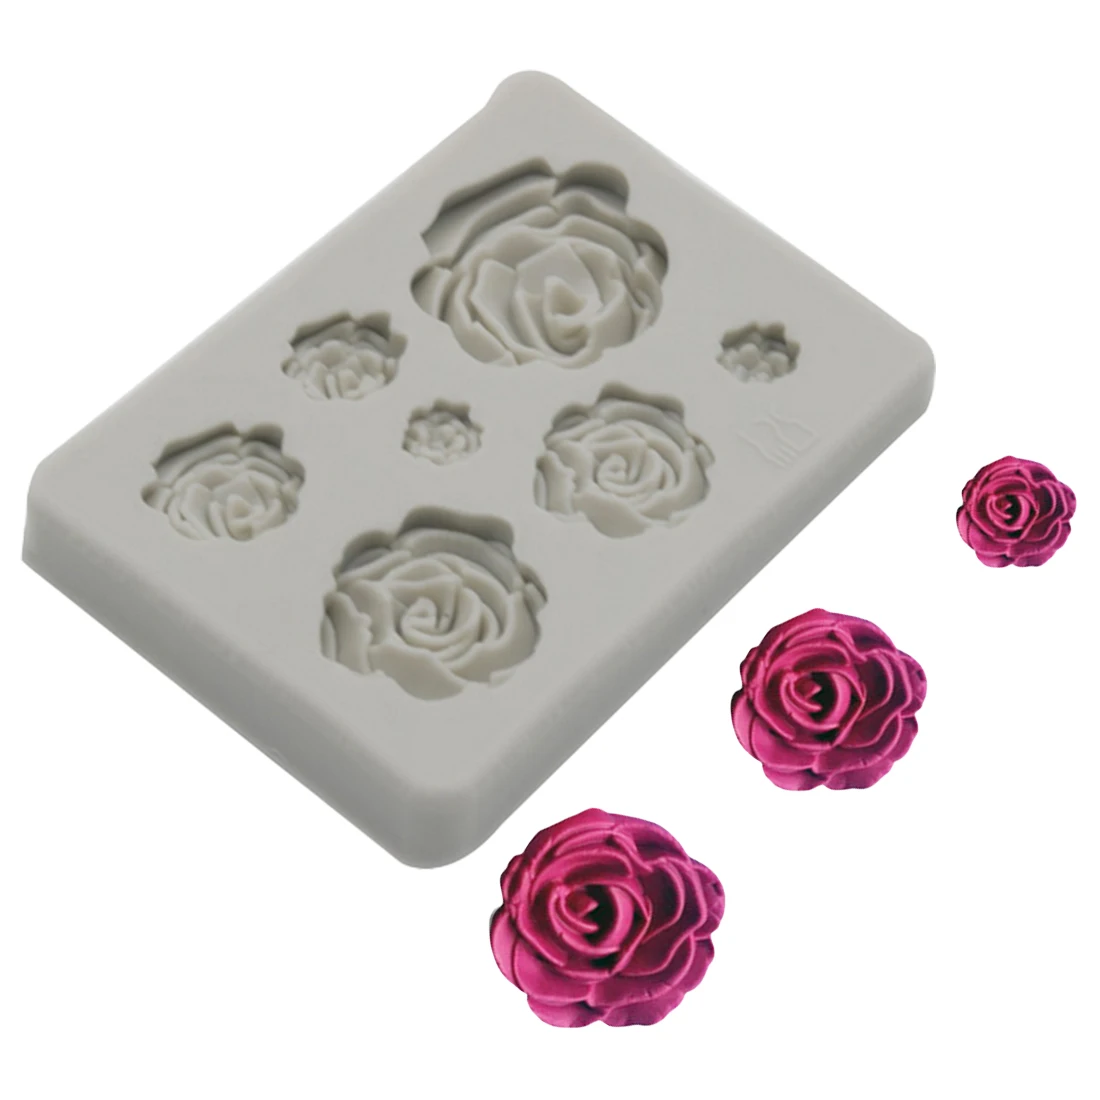 Sugarcraft силиконовая форма в виде цветка розы помадка форма для украшения торта инструменты для шоколада Confeitaria форма для выпечки аксессуары